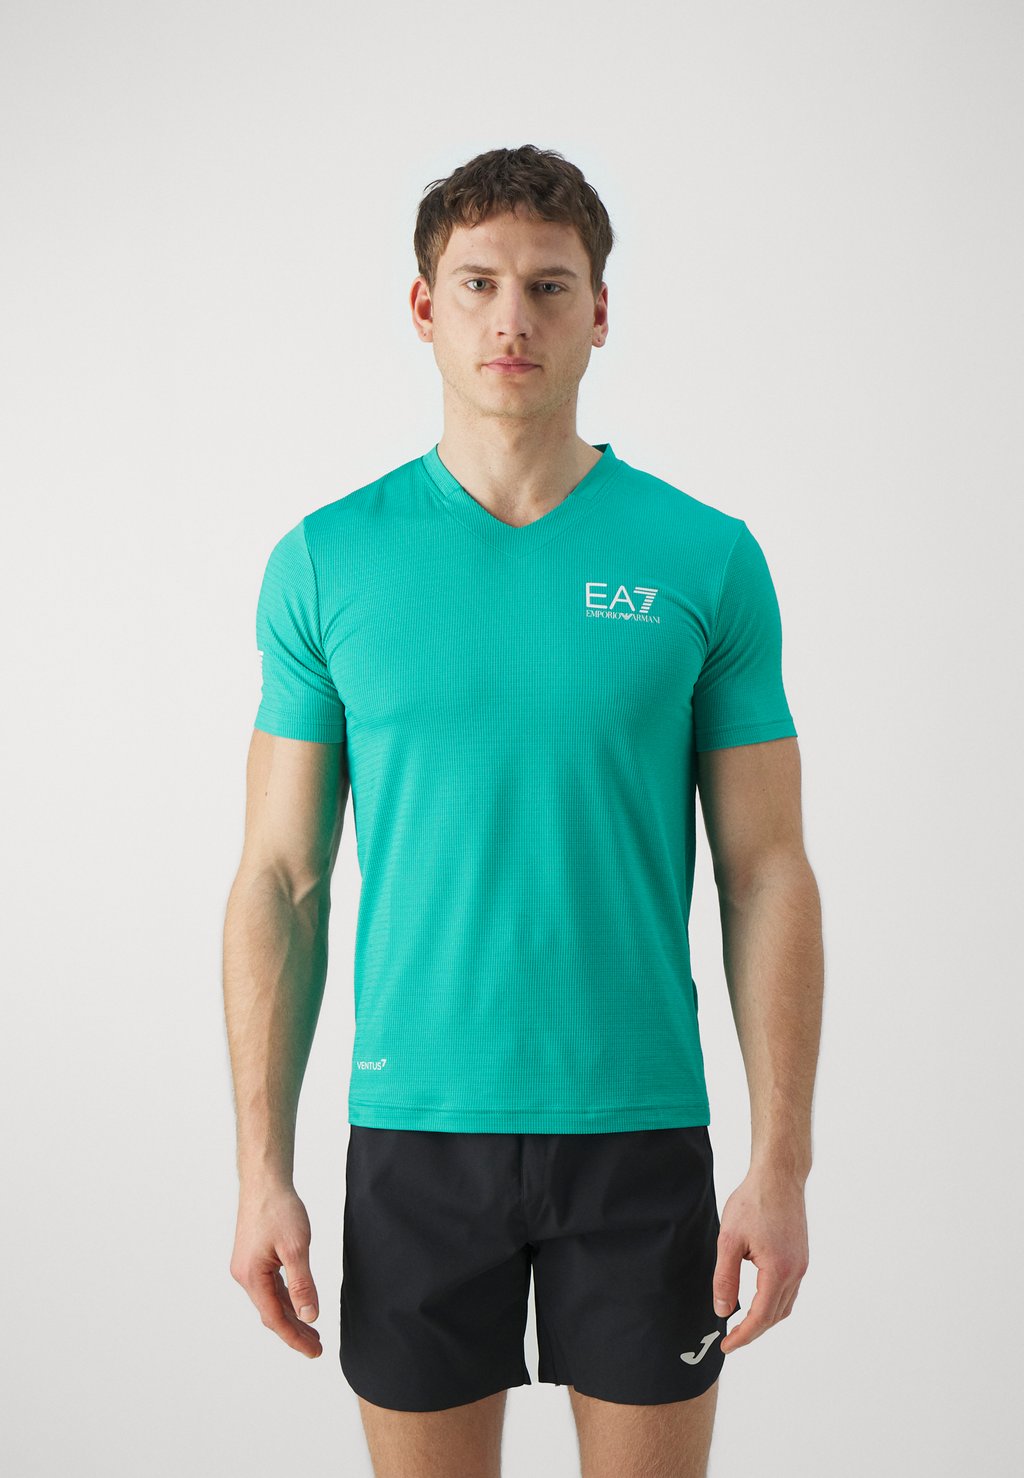 Спортивная футболка Tennis Pro Tee Textured EA7 Emporio Armani, цвет spectra green